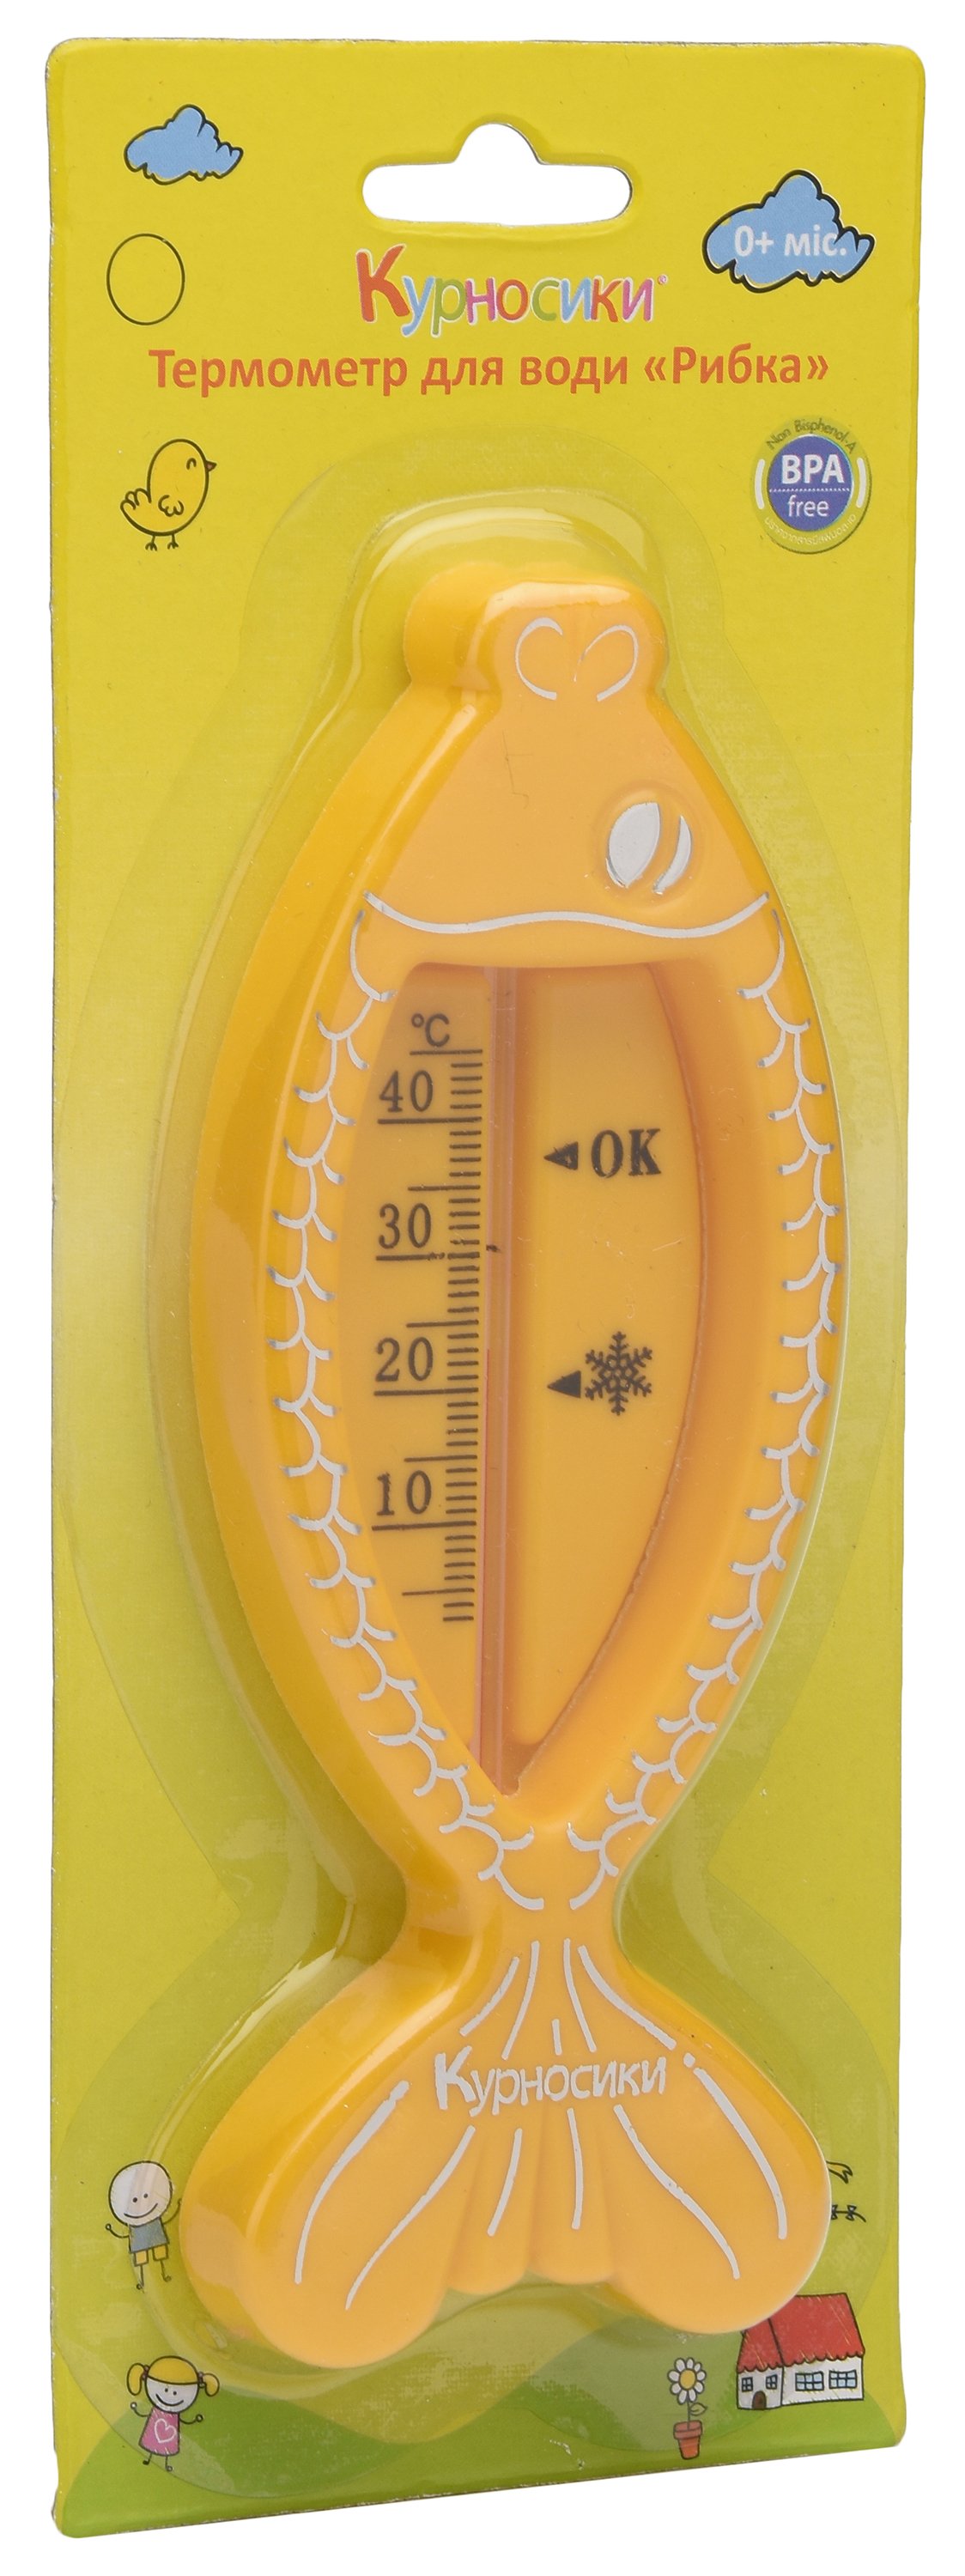 Термометр для води Курносики Рибка, жовтий (7086 жовт) - фото 3